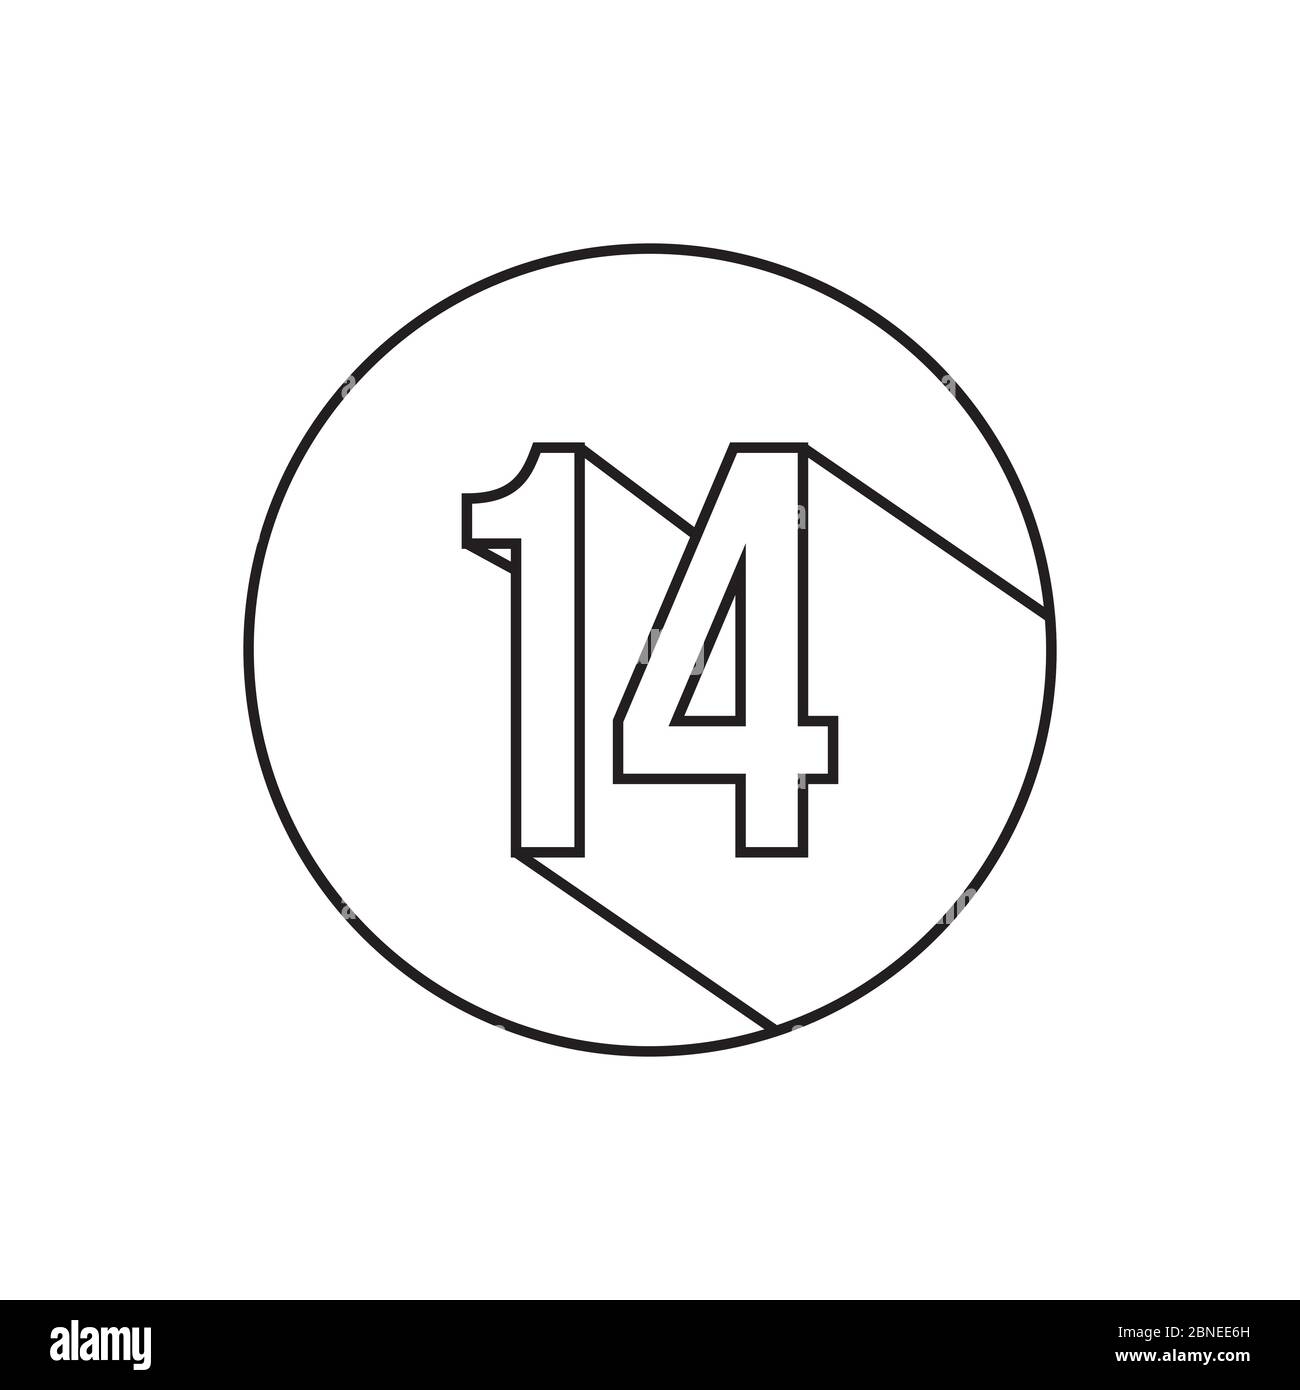 14 linee numeriche simbolo vettore isolato su sfondo bianco Illustrazione Vettoriale